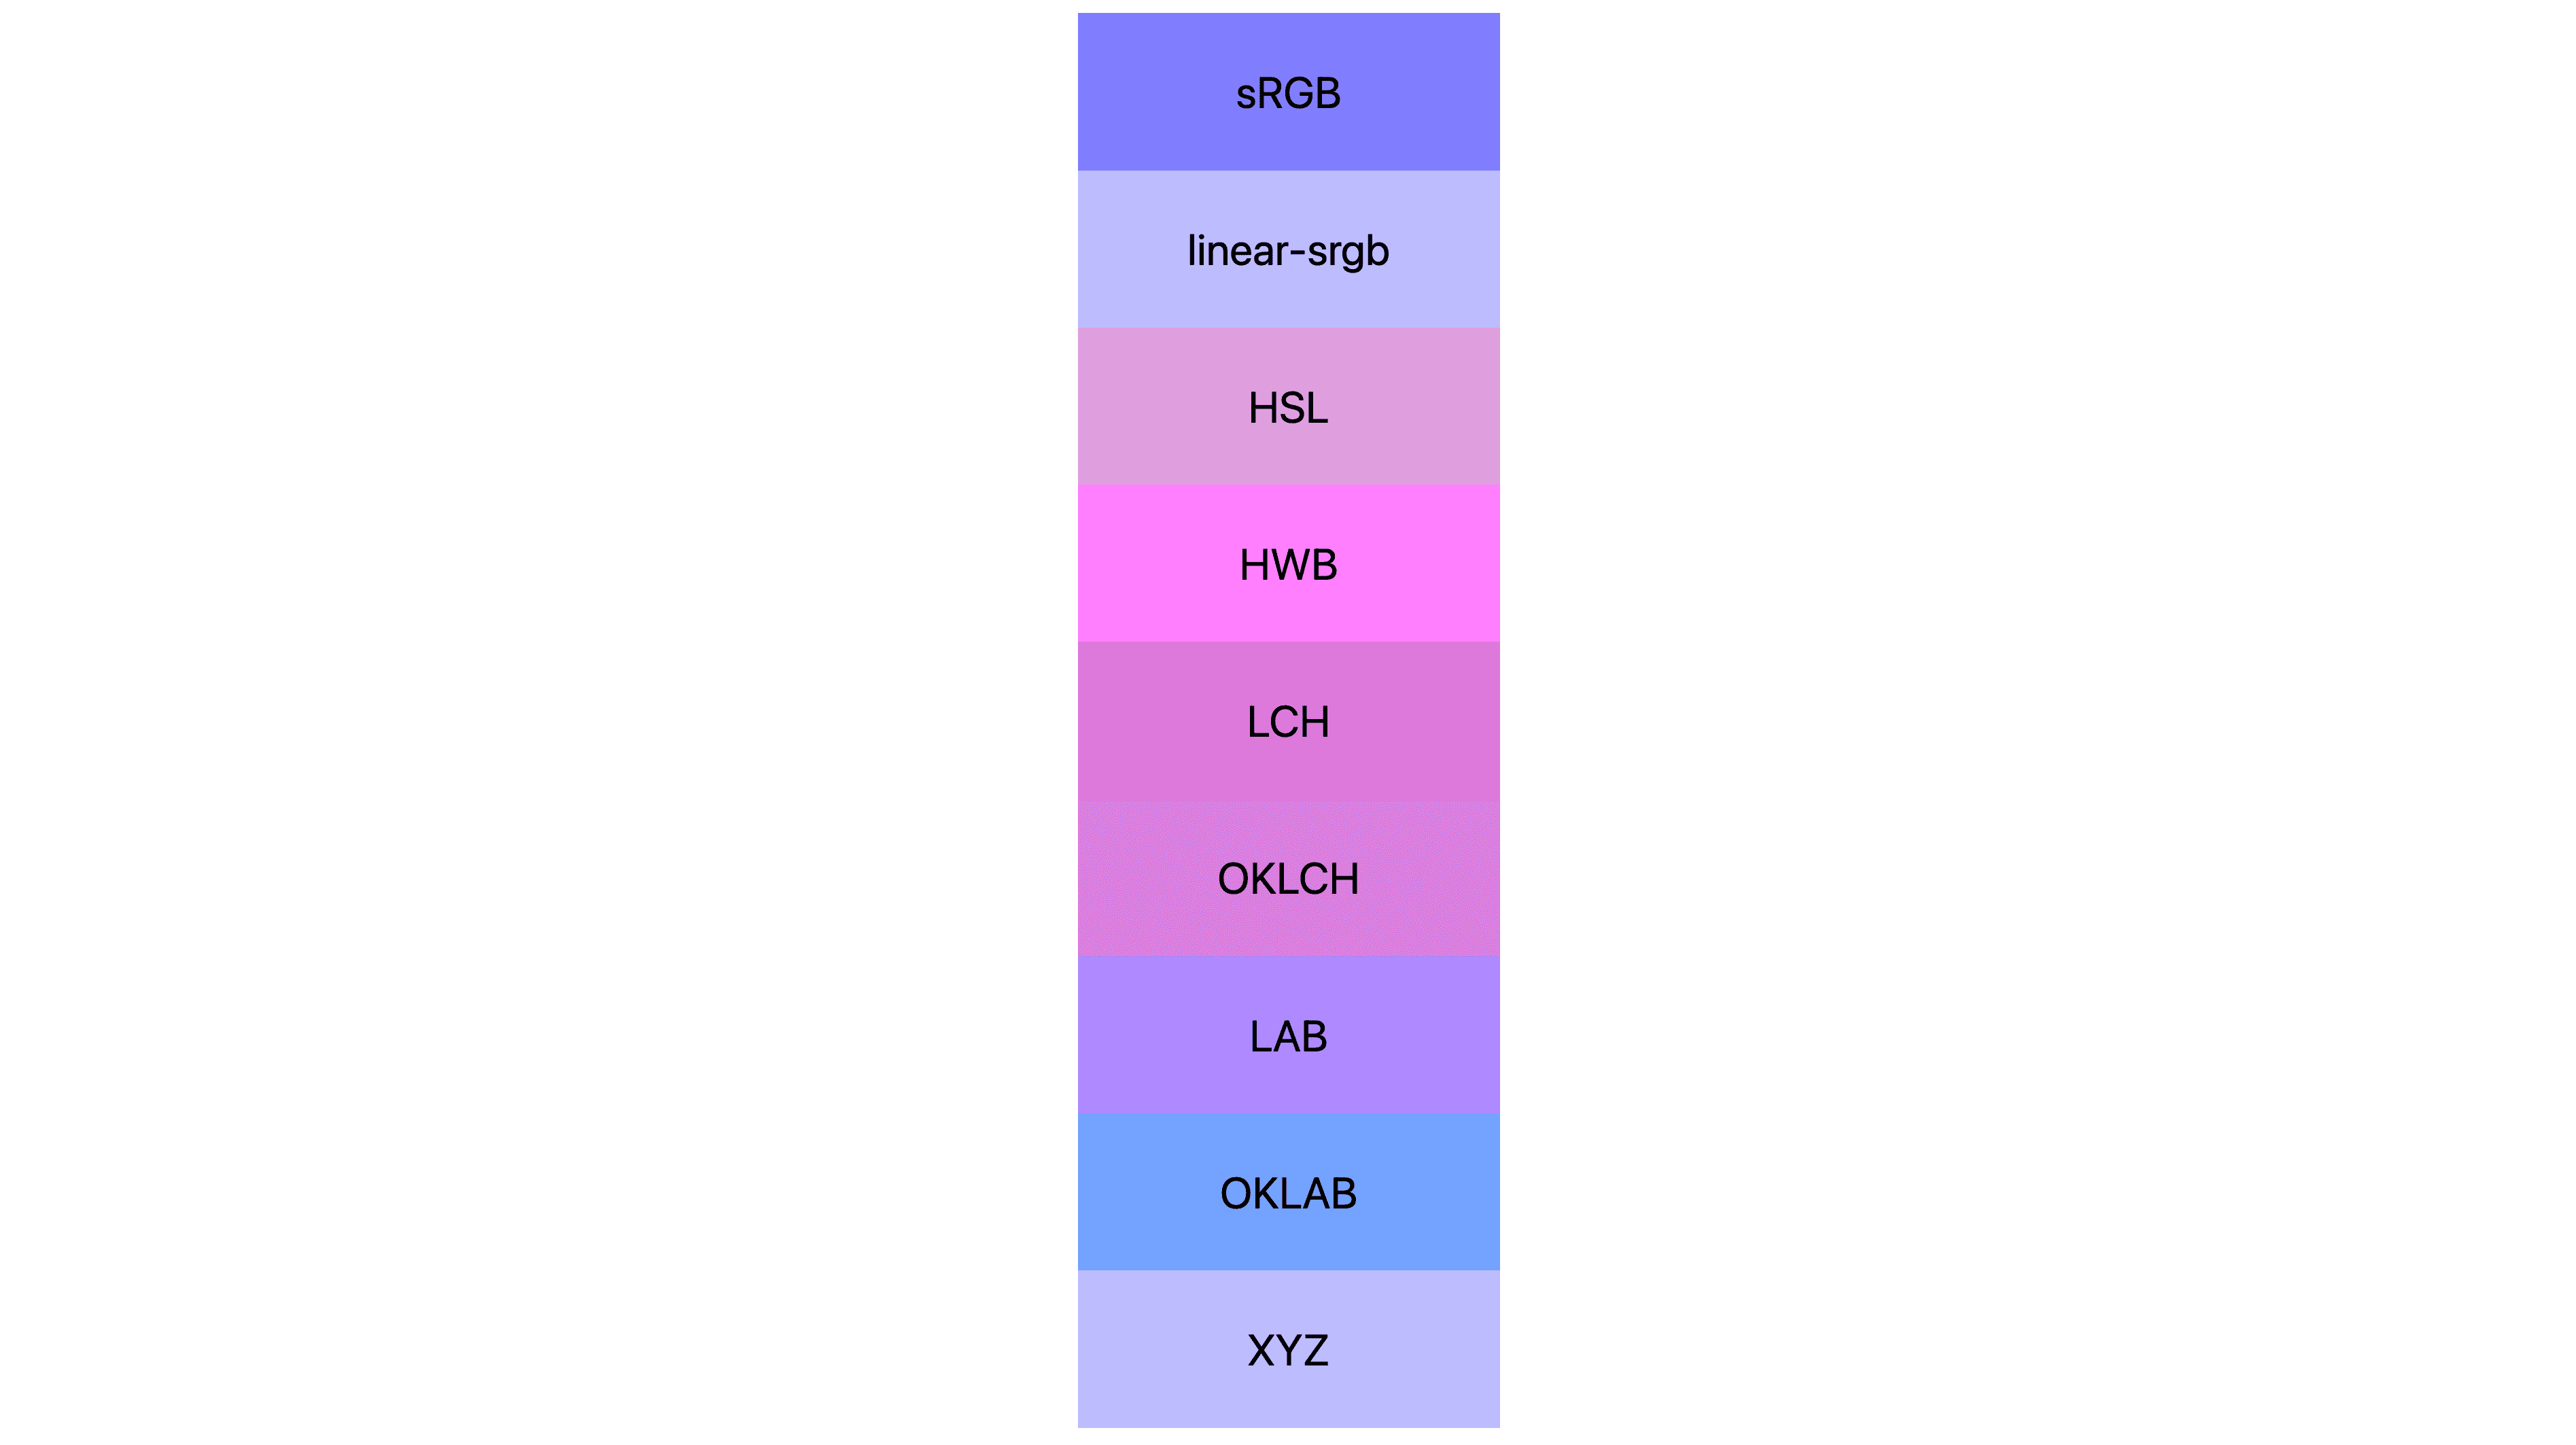 Sept espaces de couleurs (srgb, linear-srgb, lch, oklch, lab, oklab, xyz) chacun avec des résultats différents. Beaucoup sont roses ou violets, mais peu sont encore bleus.